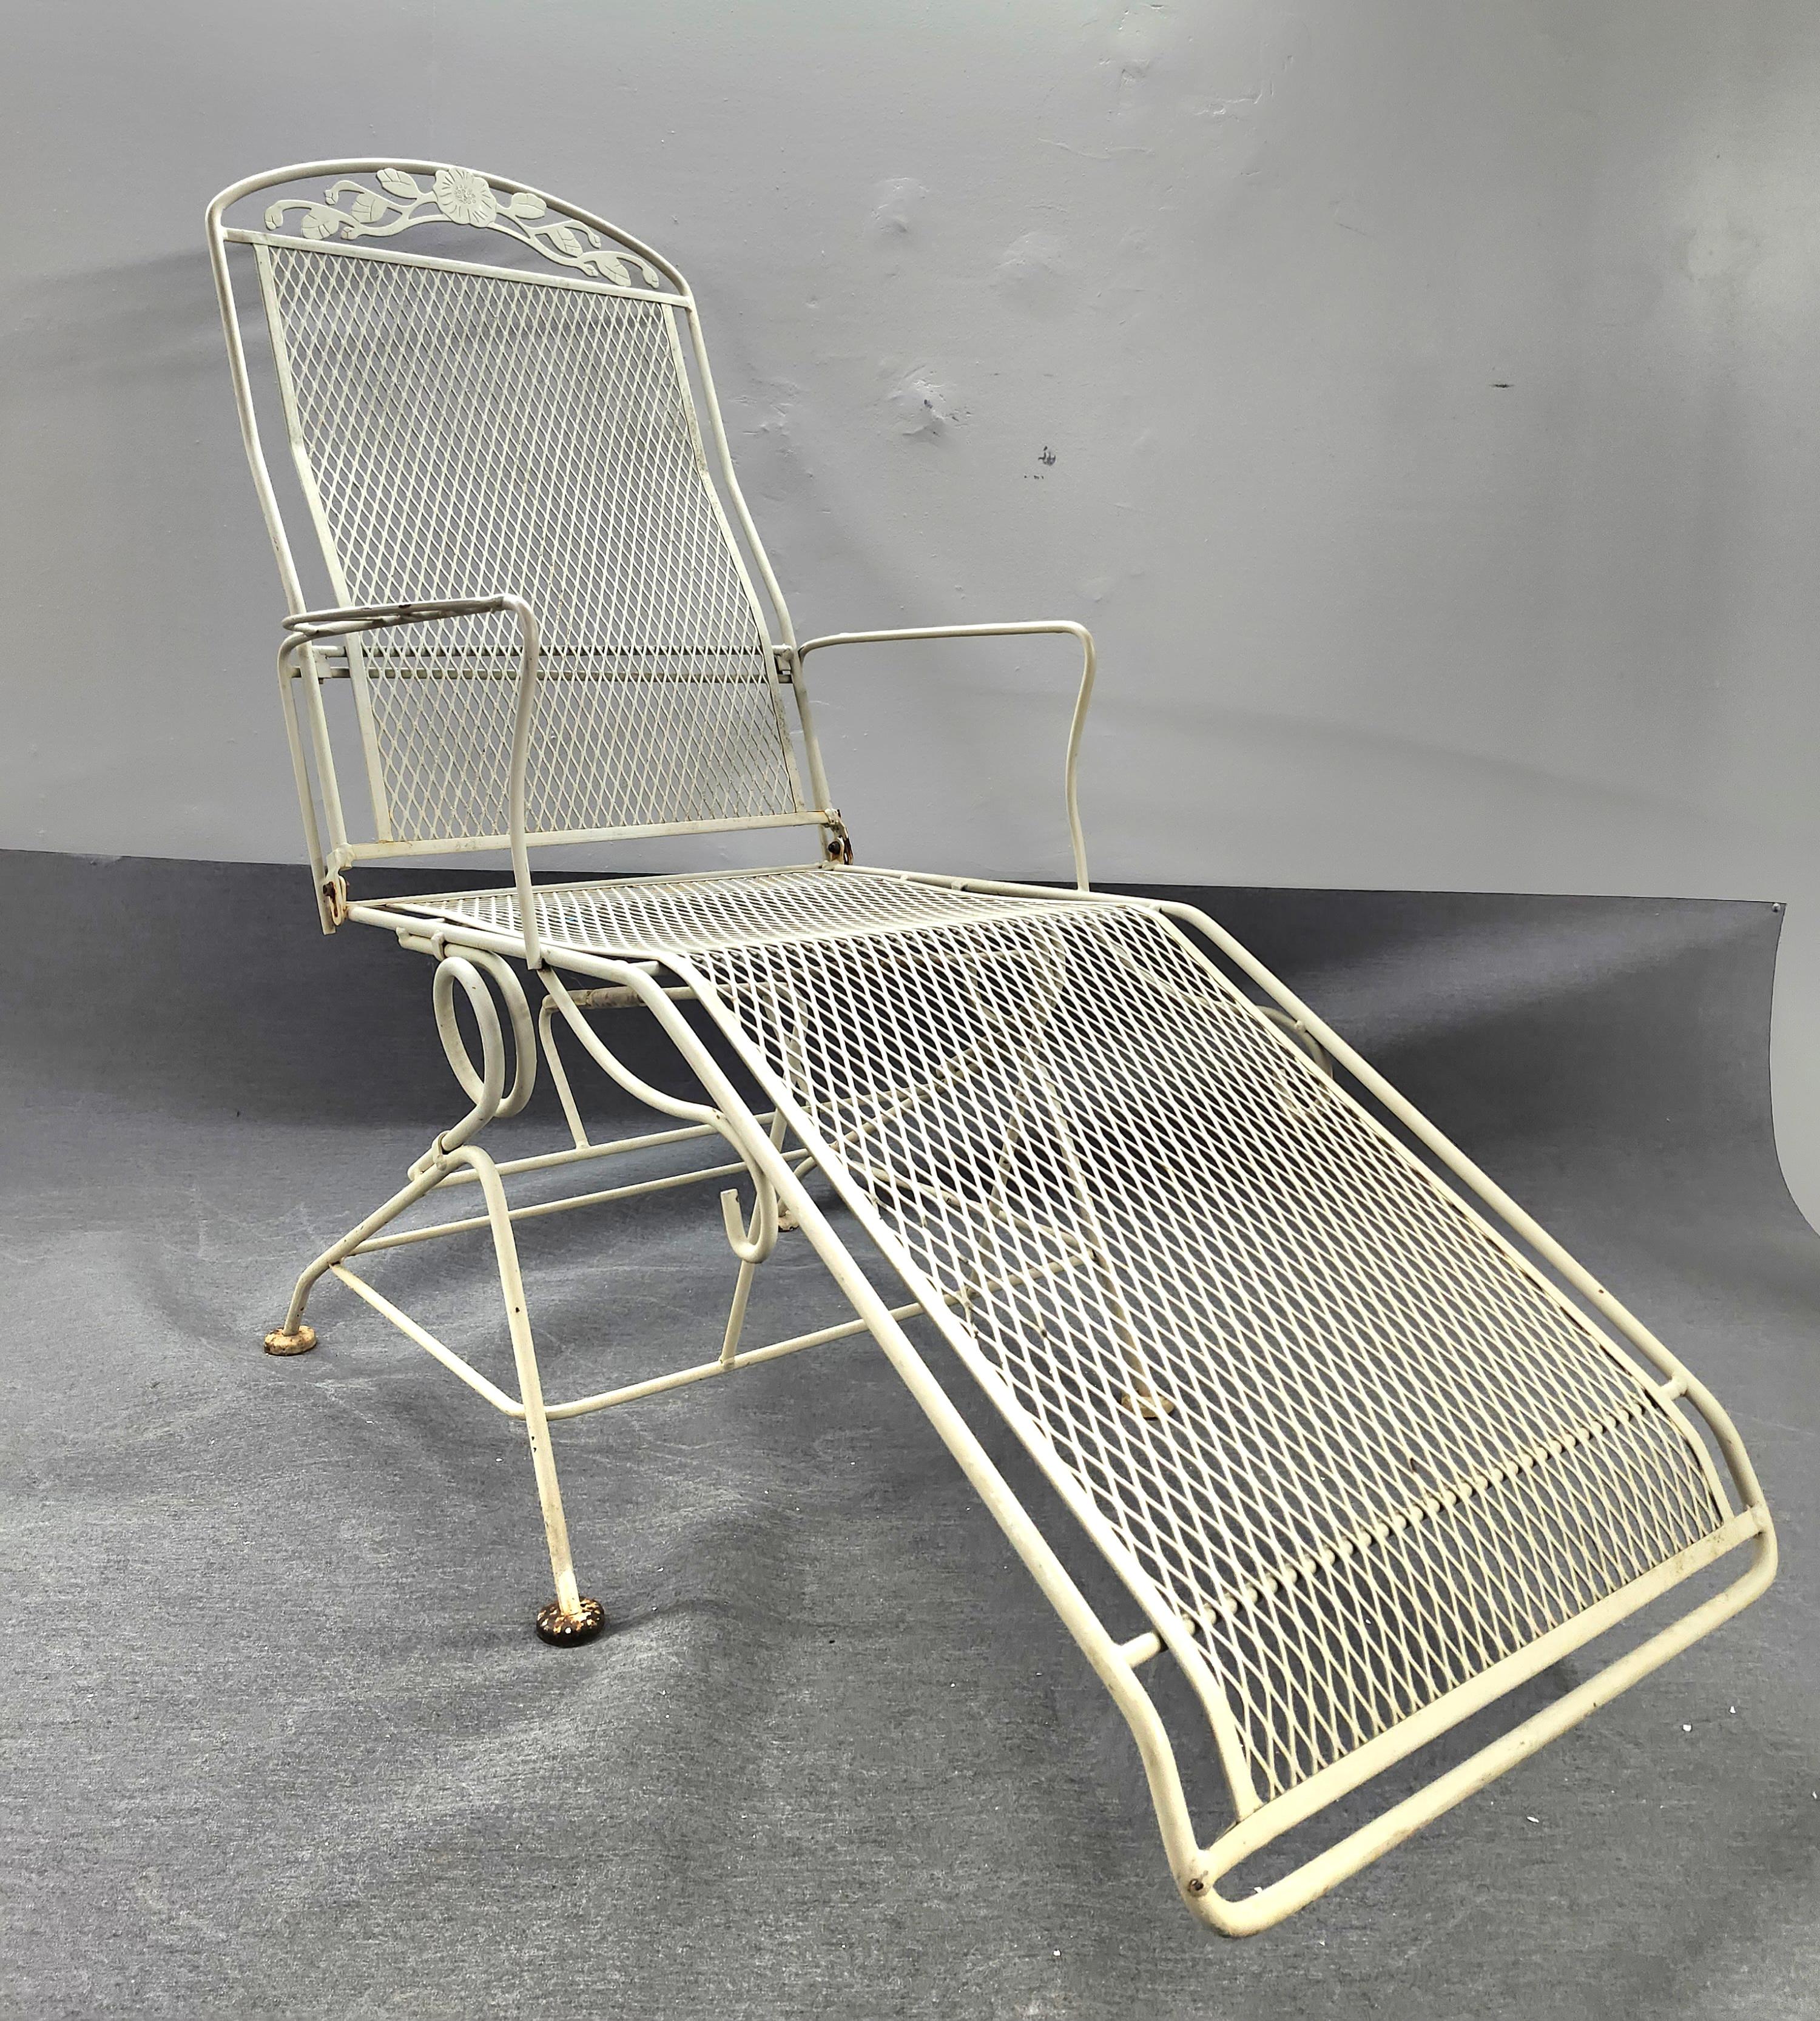 Disponible dès maintenant pour votre plaisir et prêt à être expédié est une chaise longue de patio vintage en fer forgé fabriquée par Woodard.

Cette belle chaise en fer forgé est l'accessoire idéal pour tout jardin, terrasse ou véranda. Savourez un